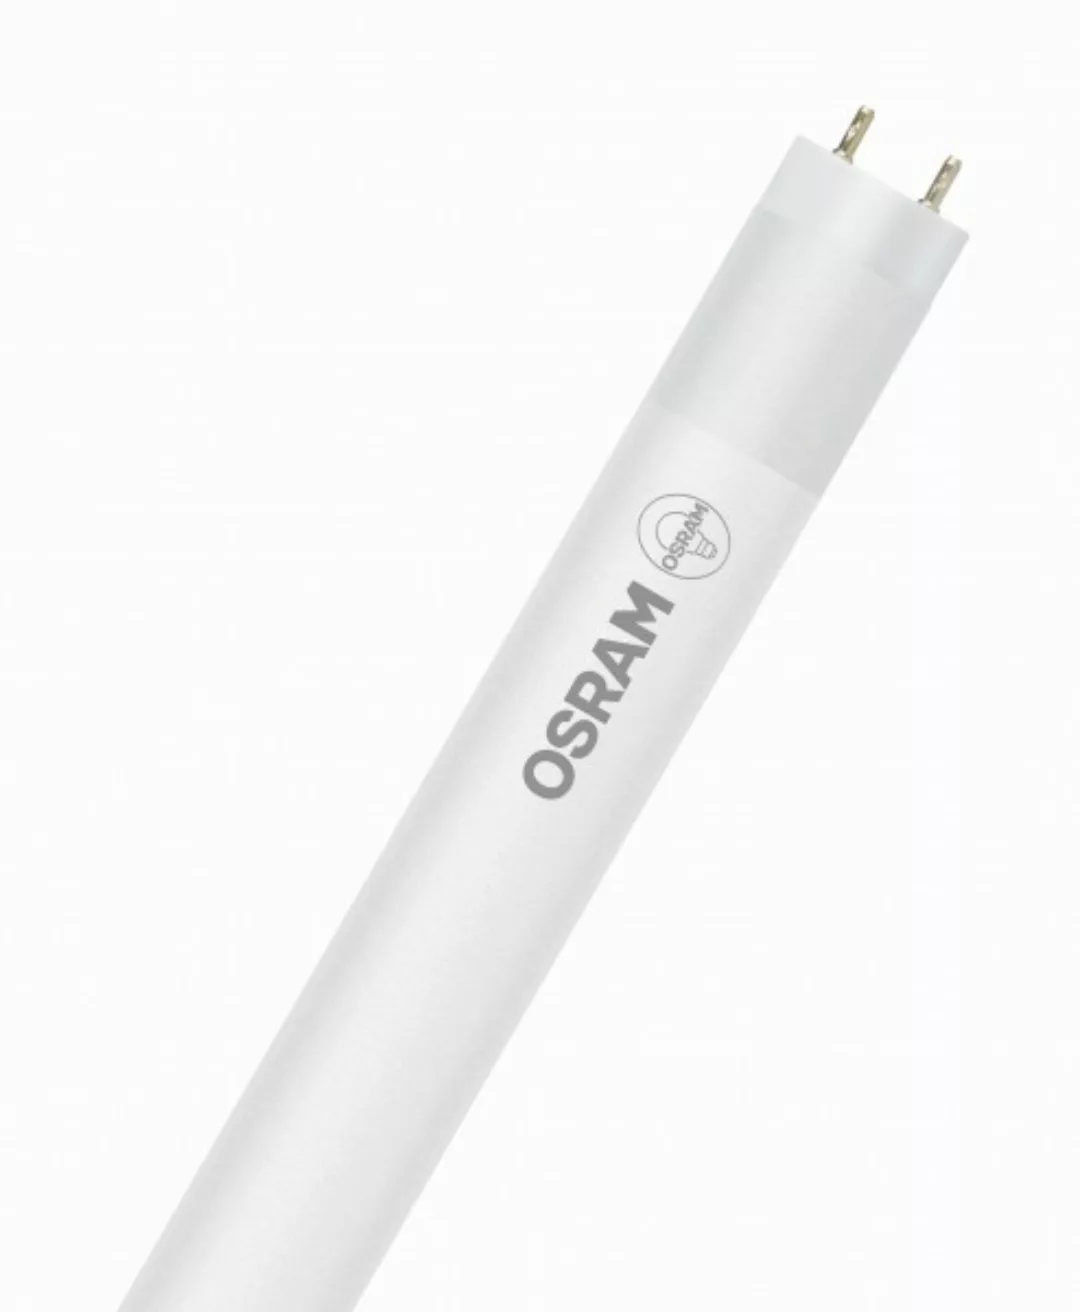 OSRAM LED RÖHRE SUBSTITUBE T8 STAR+ ST8SP-1.2M-830 EM FS K Warmweiß Matt G1 günstig online kaufen